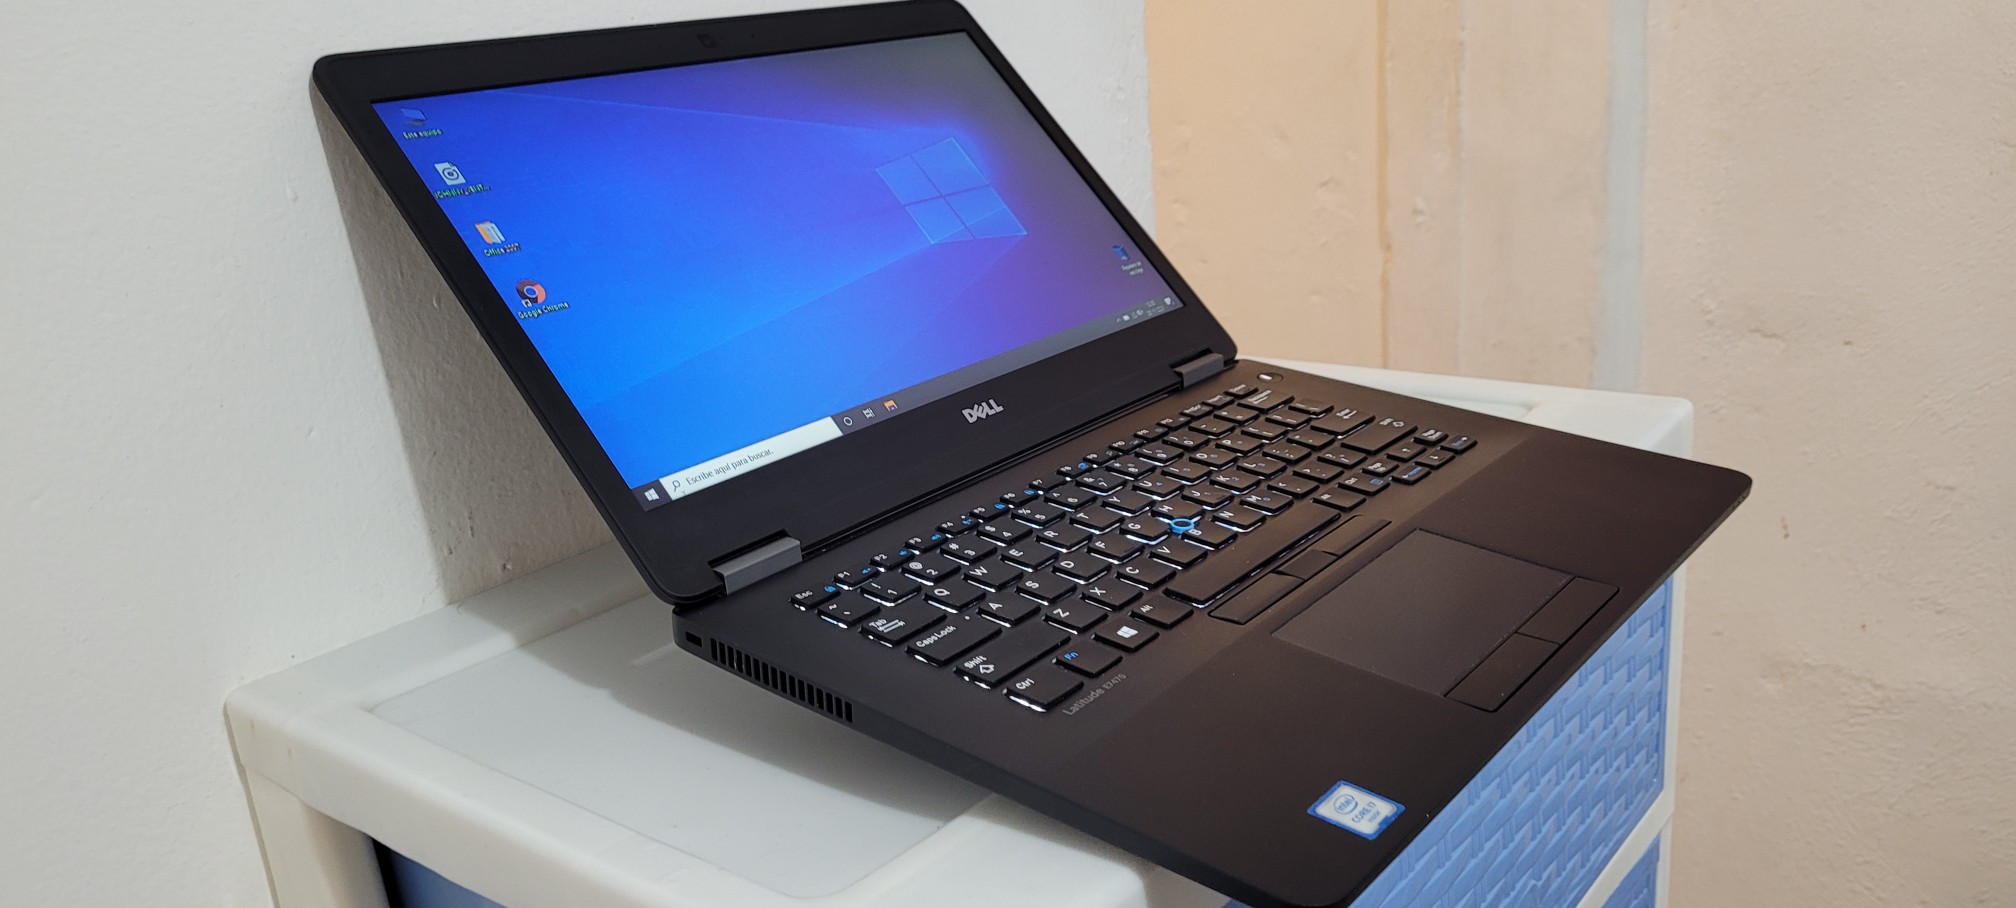 computadoras y laptops - Dell 7480 14 Pulg Core i5 7ma Gen Ram 8gb ddr4 Disco 128gb SSD hdmi 1